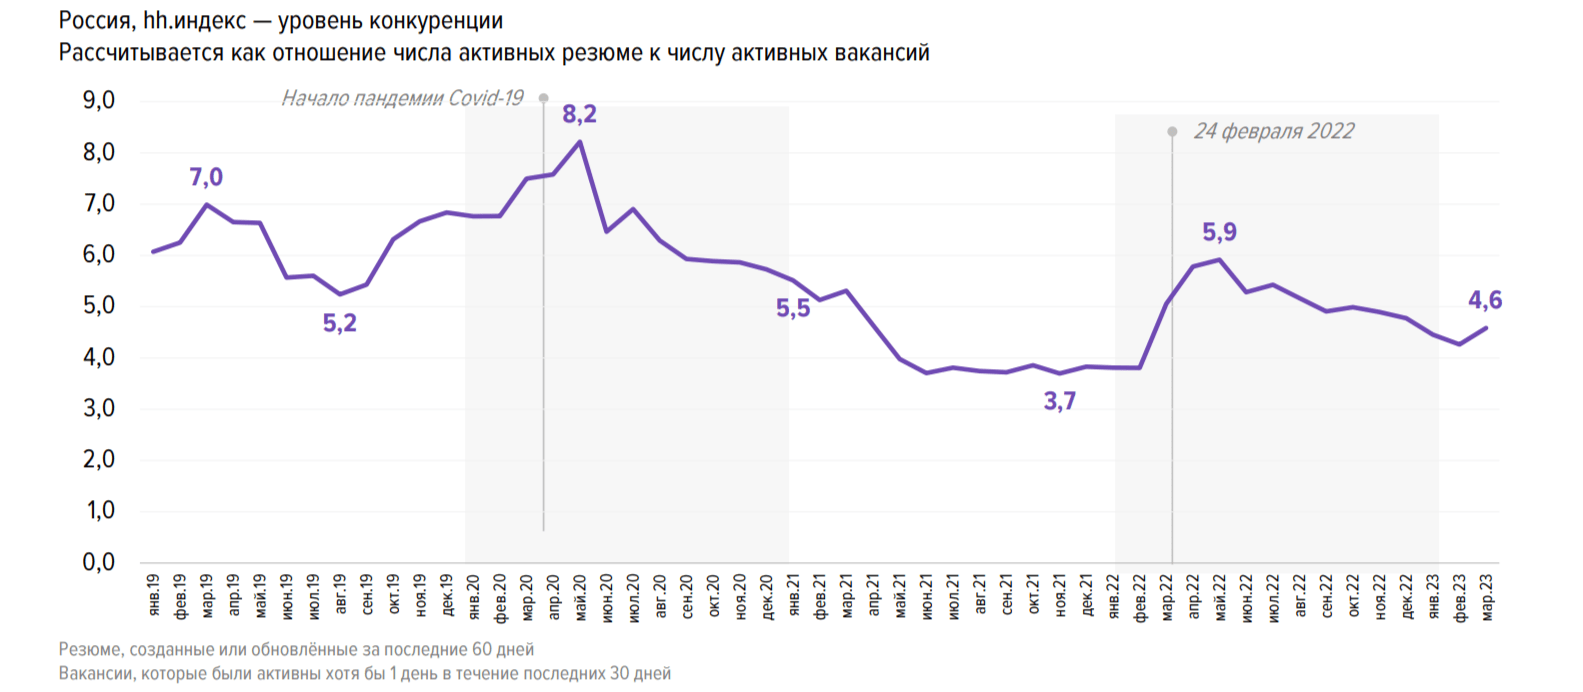 Снижение hh.индекса коррелирует с данными Росстата о рекордно низкой безработице в РФ  